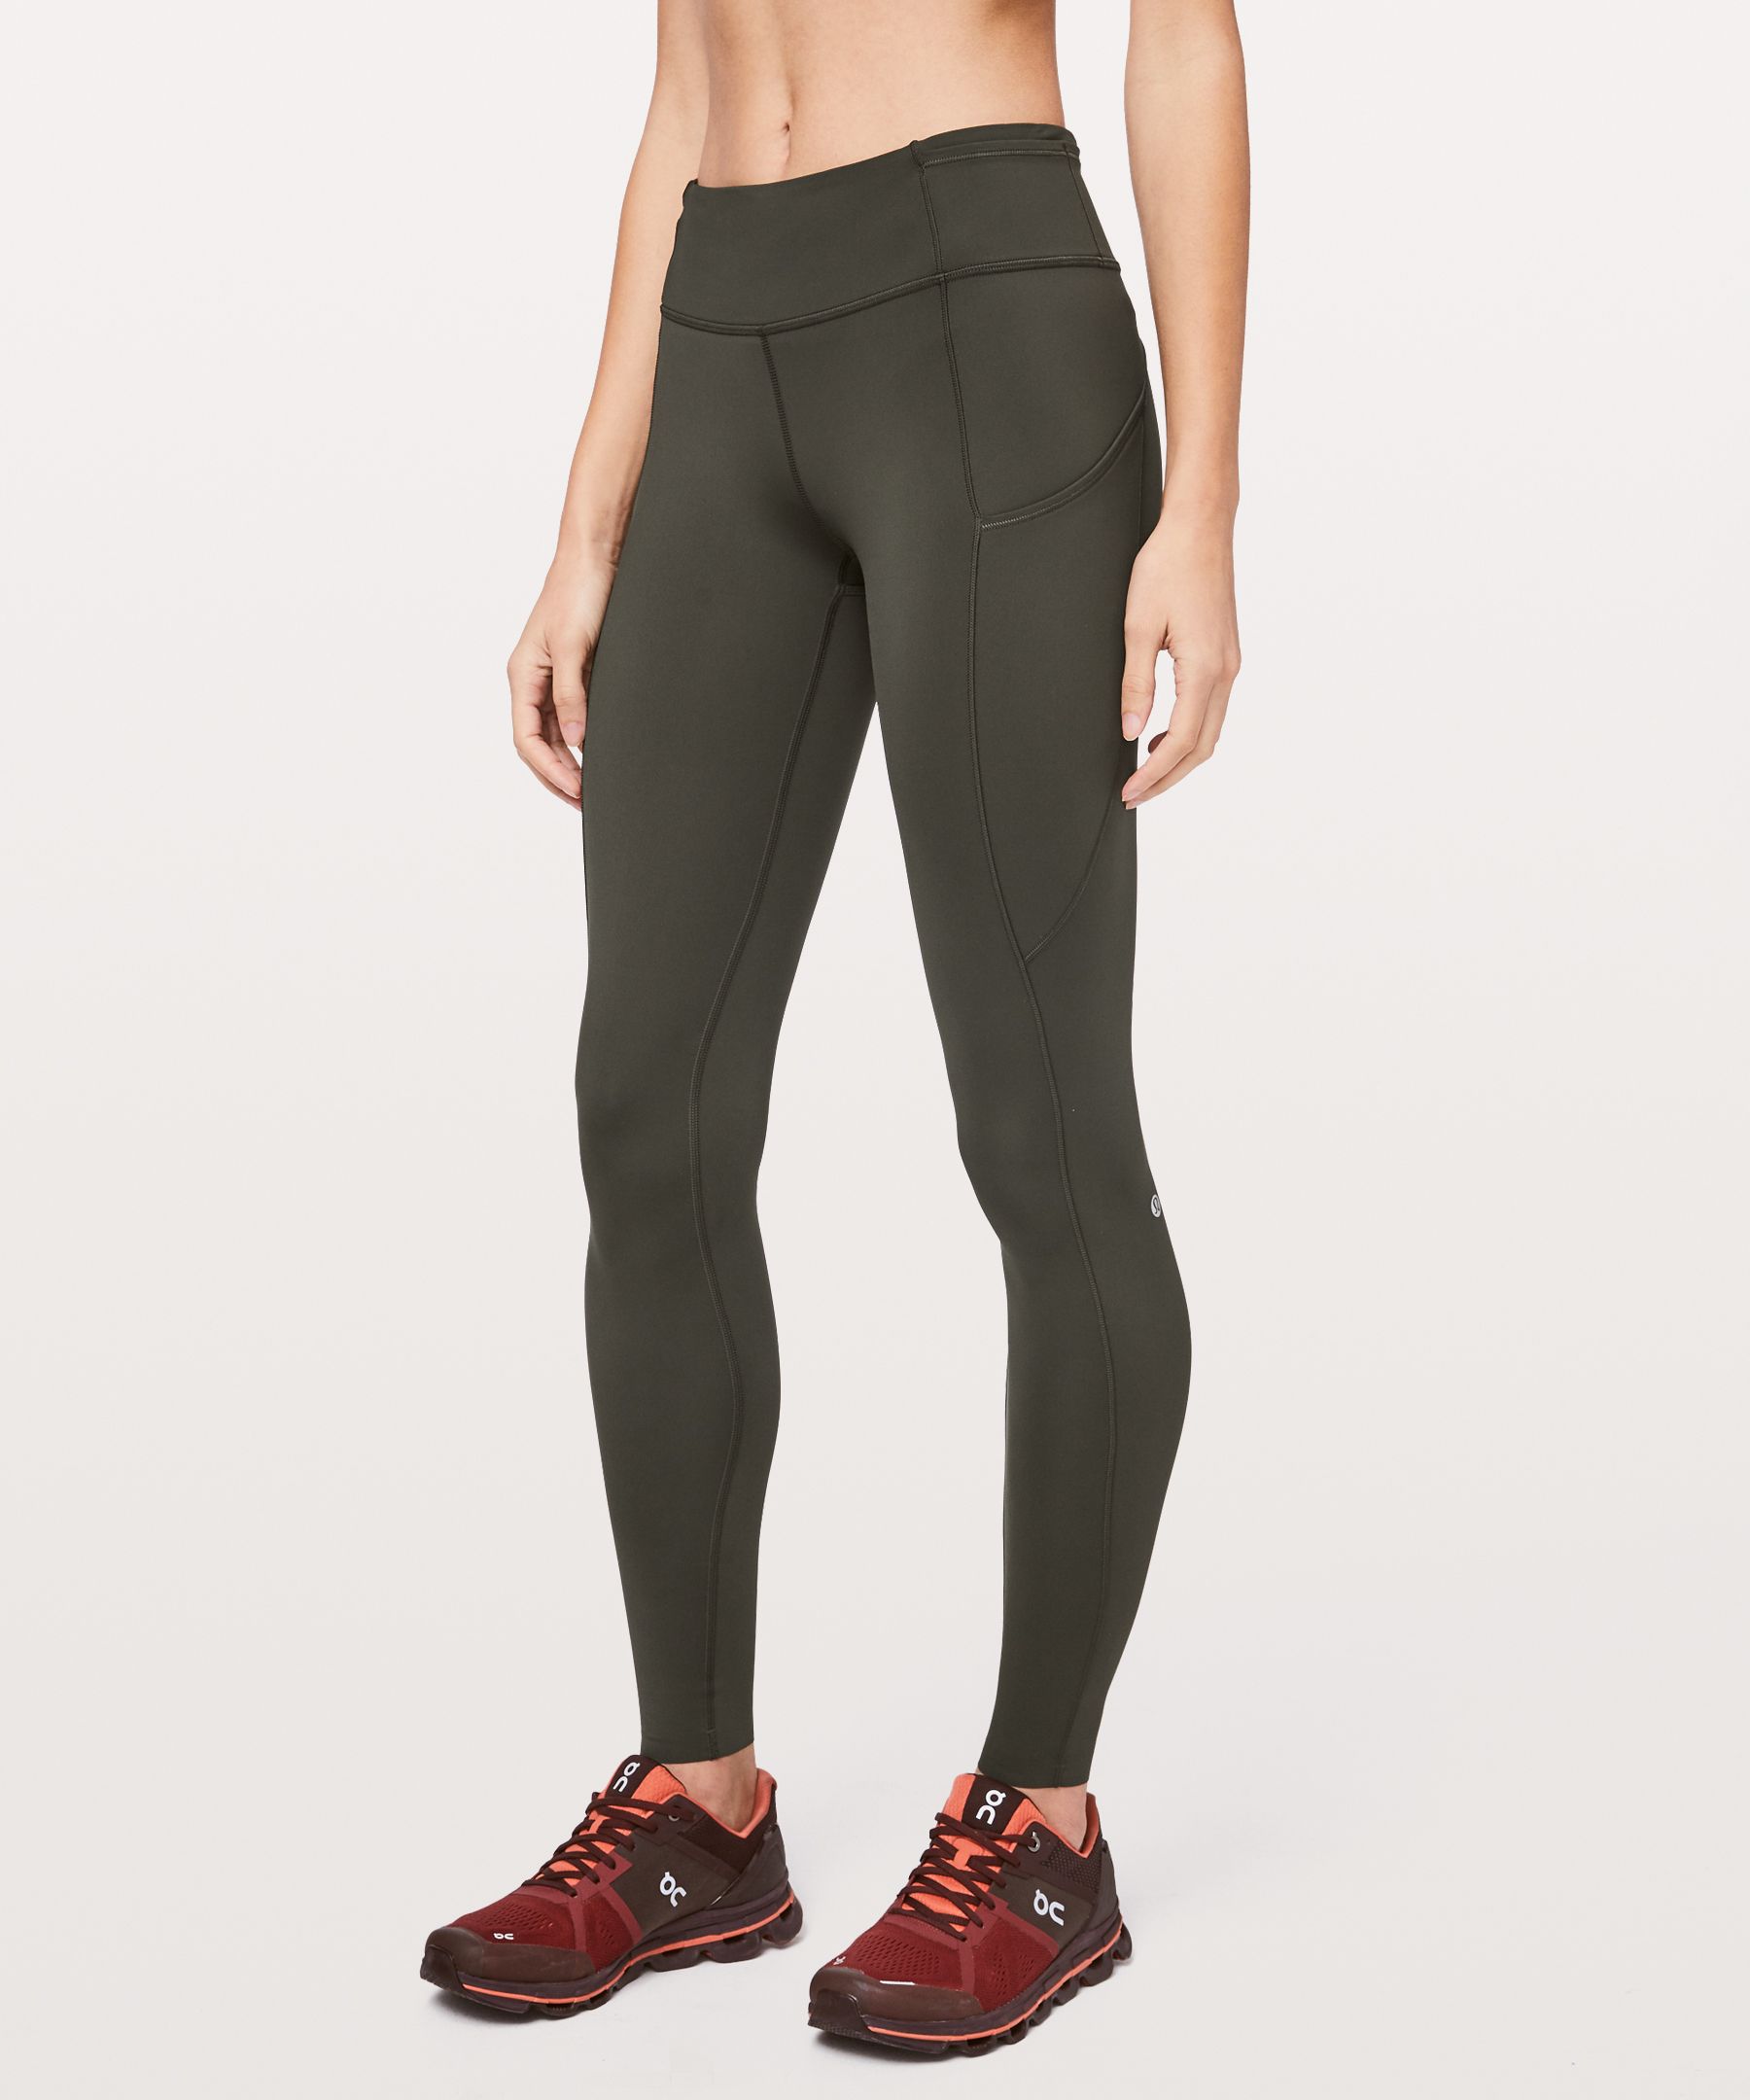 Lululemon Align leggings size 8 new! 28” NWT Green Jasper originally $98